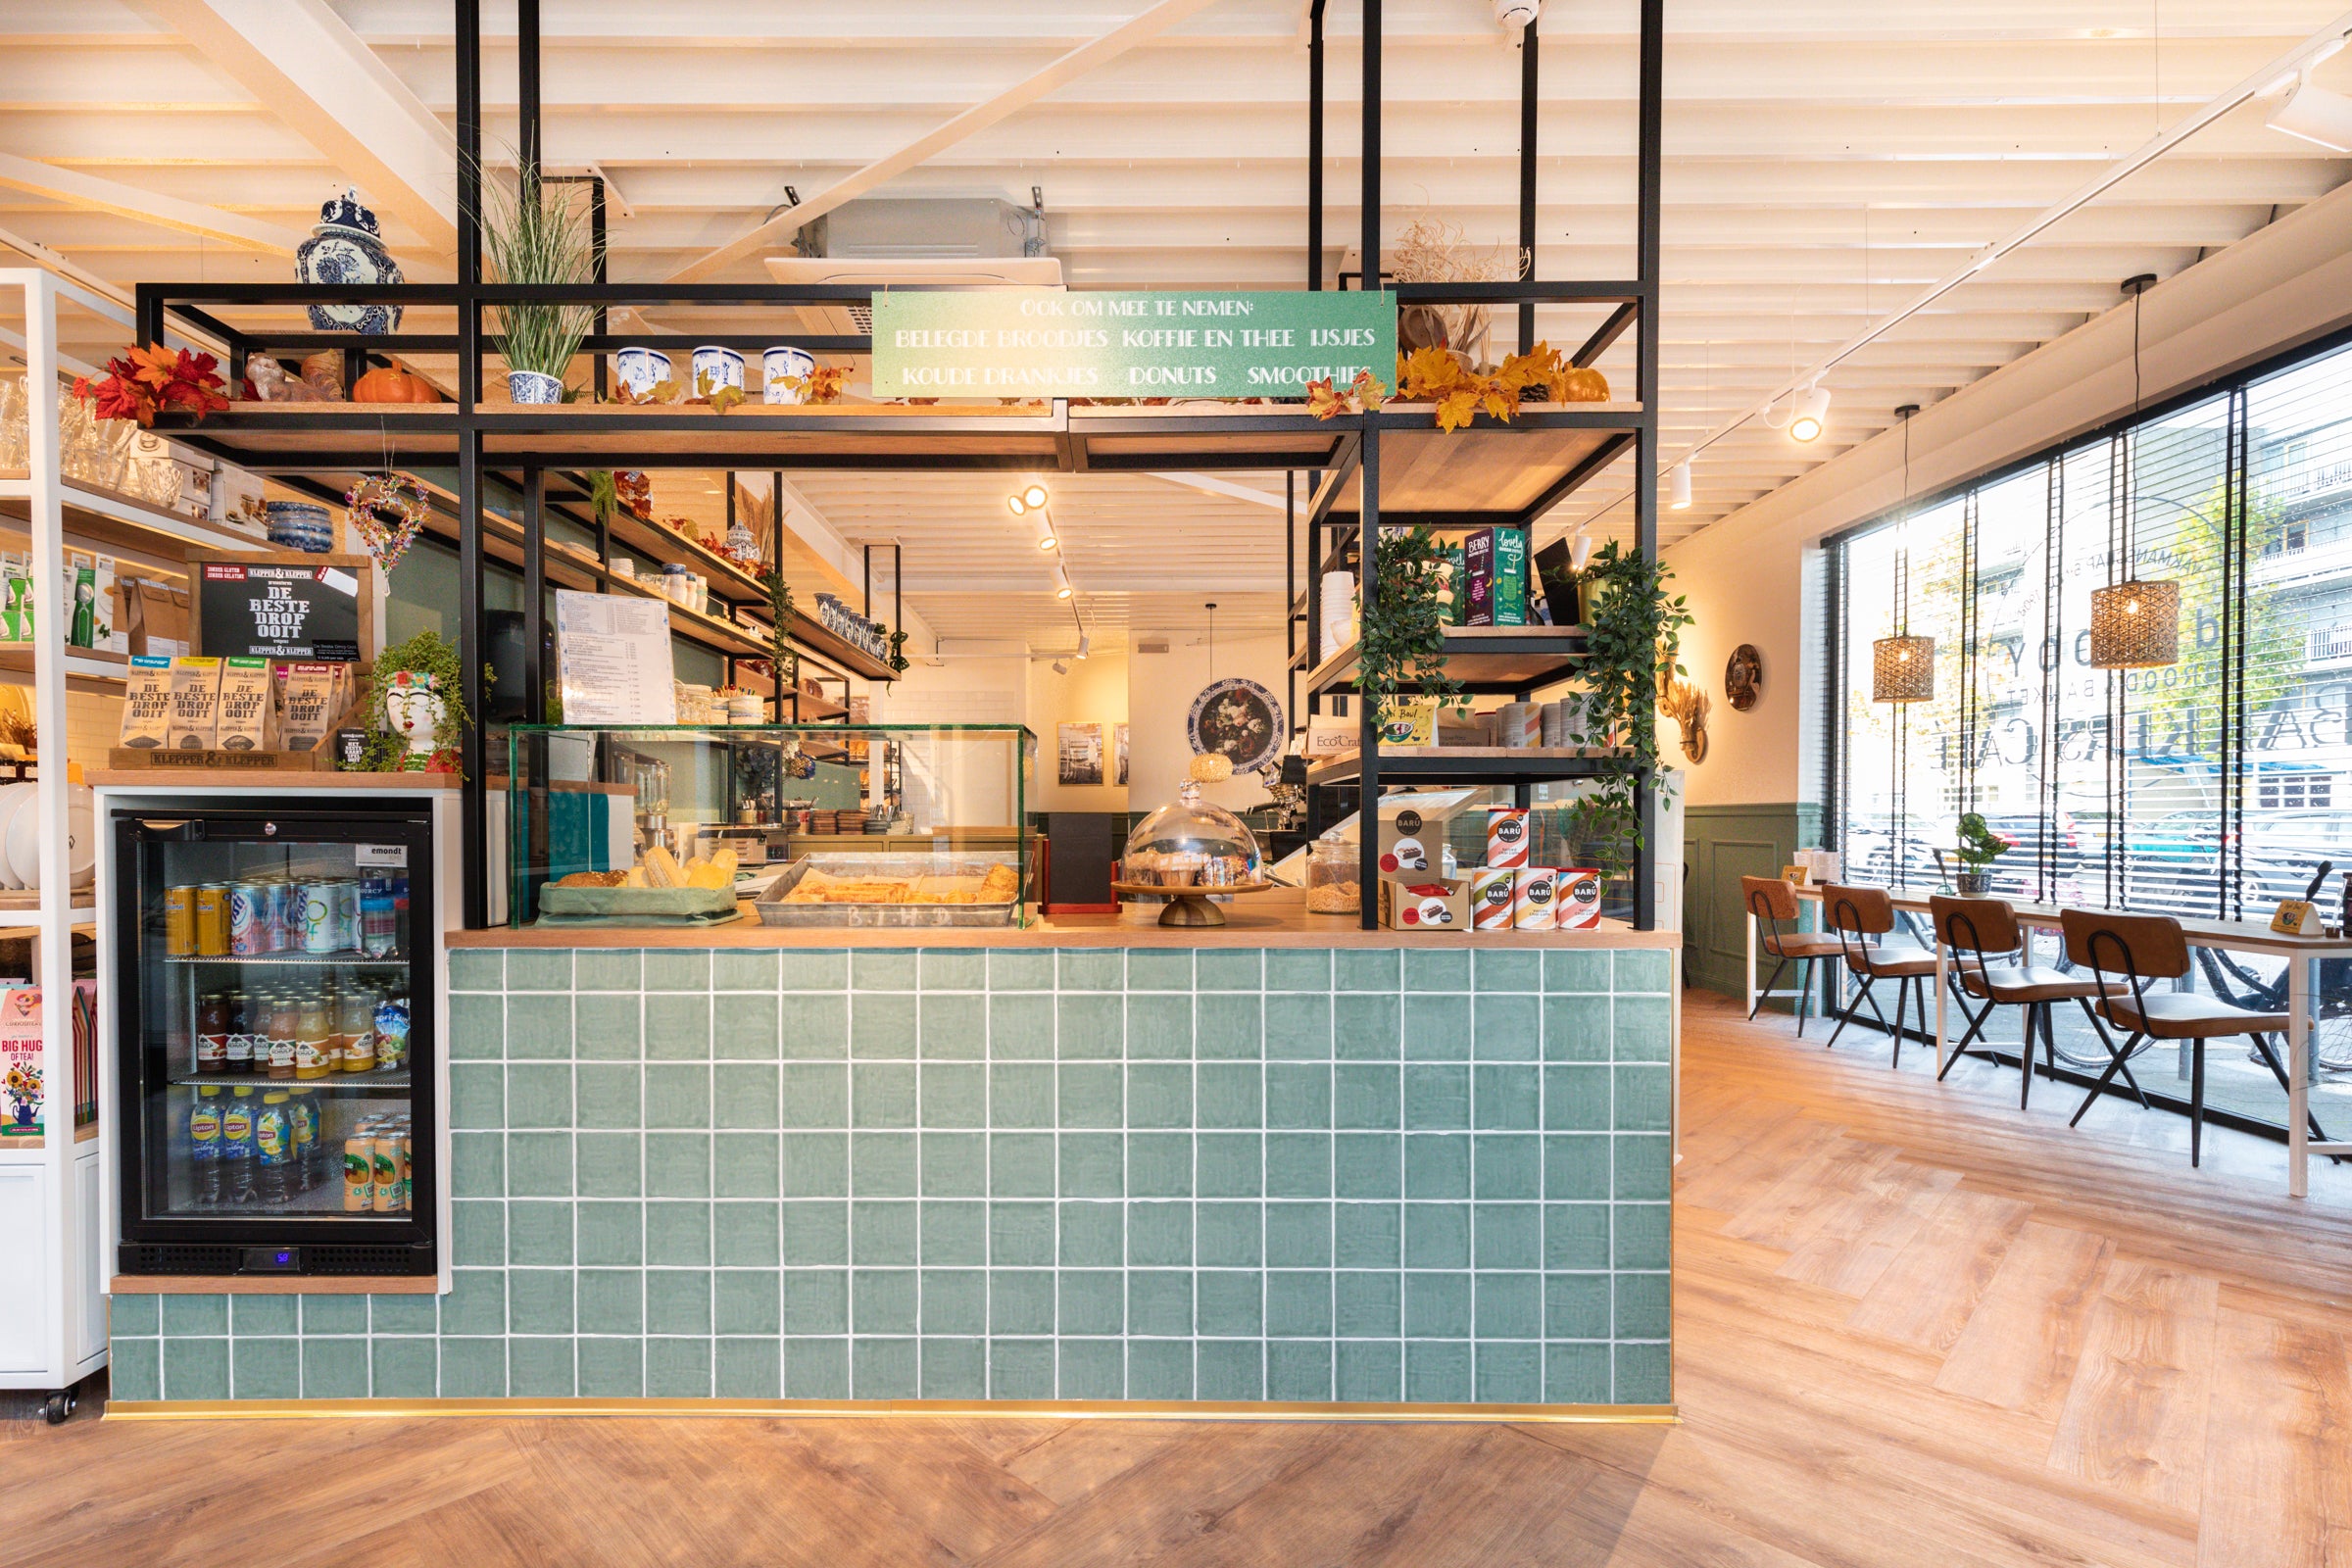 Toonbank met tegels in het groen voor bakkerij de Rooy in Roosendaal - Winkelinterieur met een PAUW effect